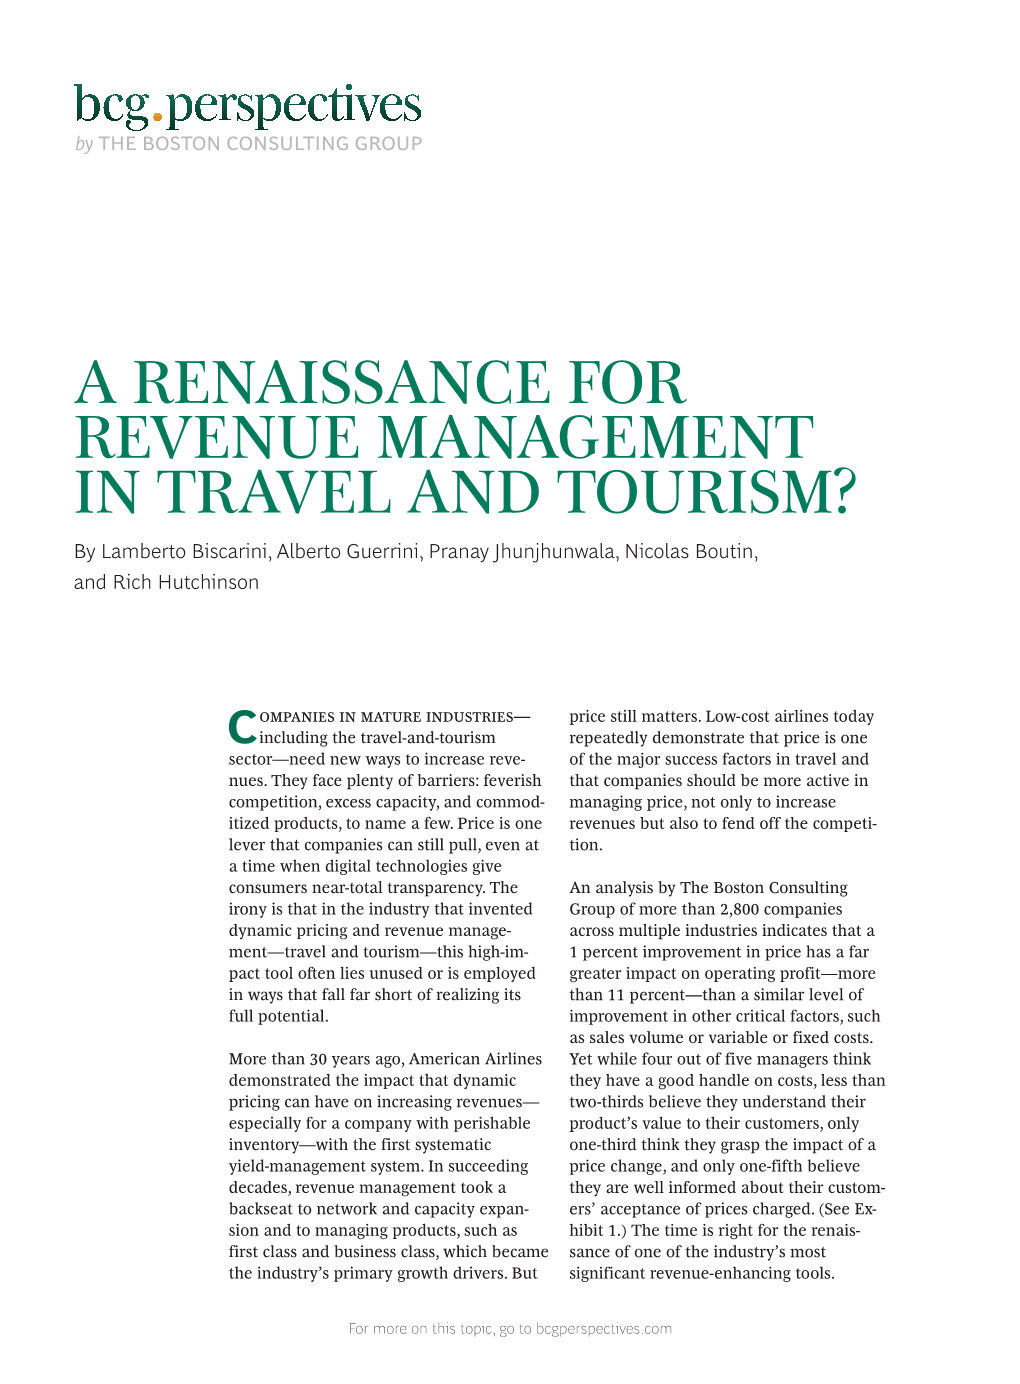 A Renaissance Revenue Management in Travel and Tourism?